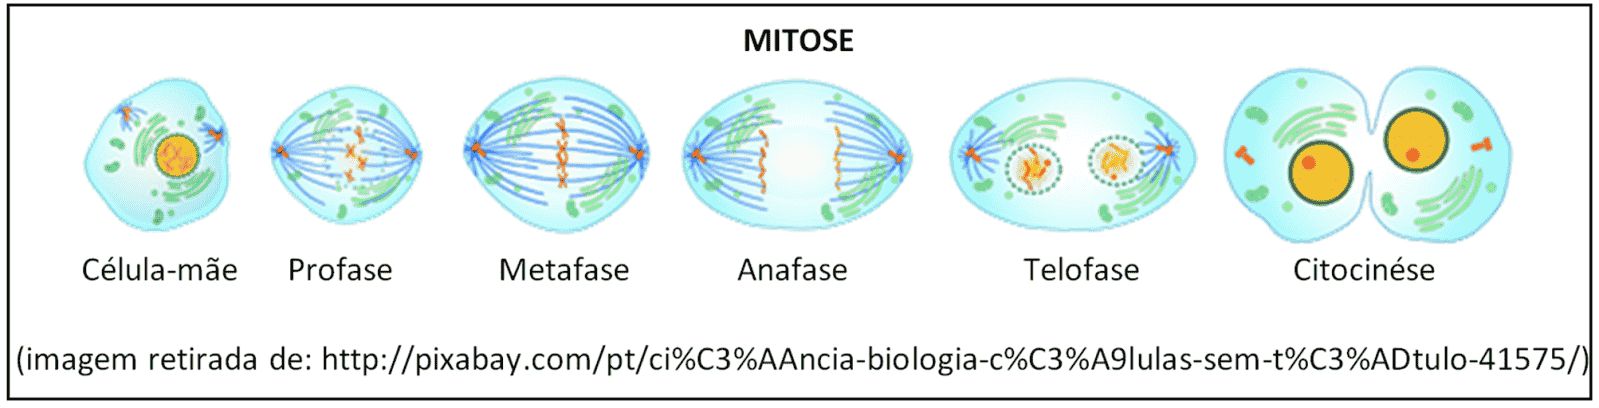 Mitose, divisão celular